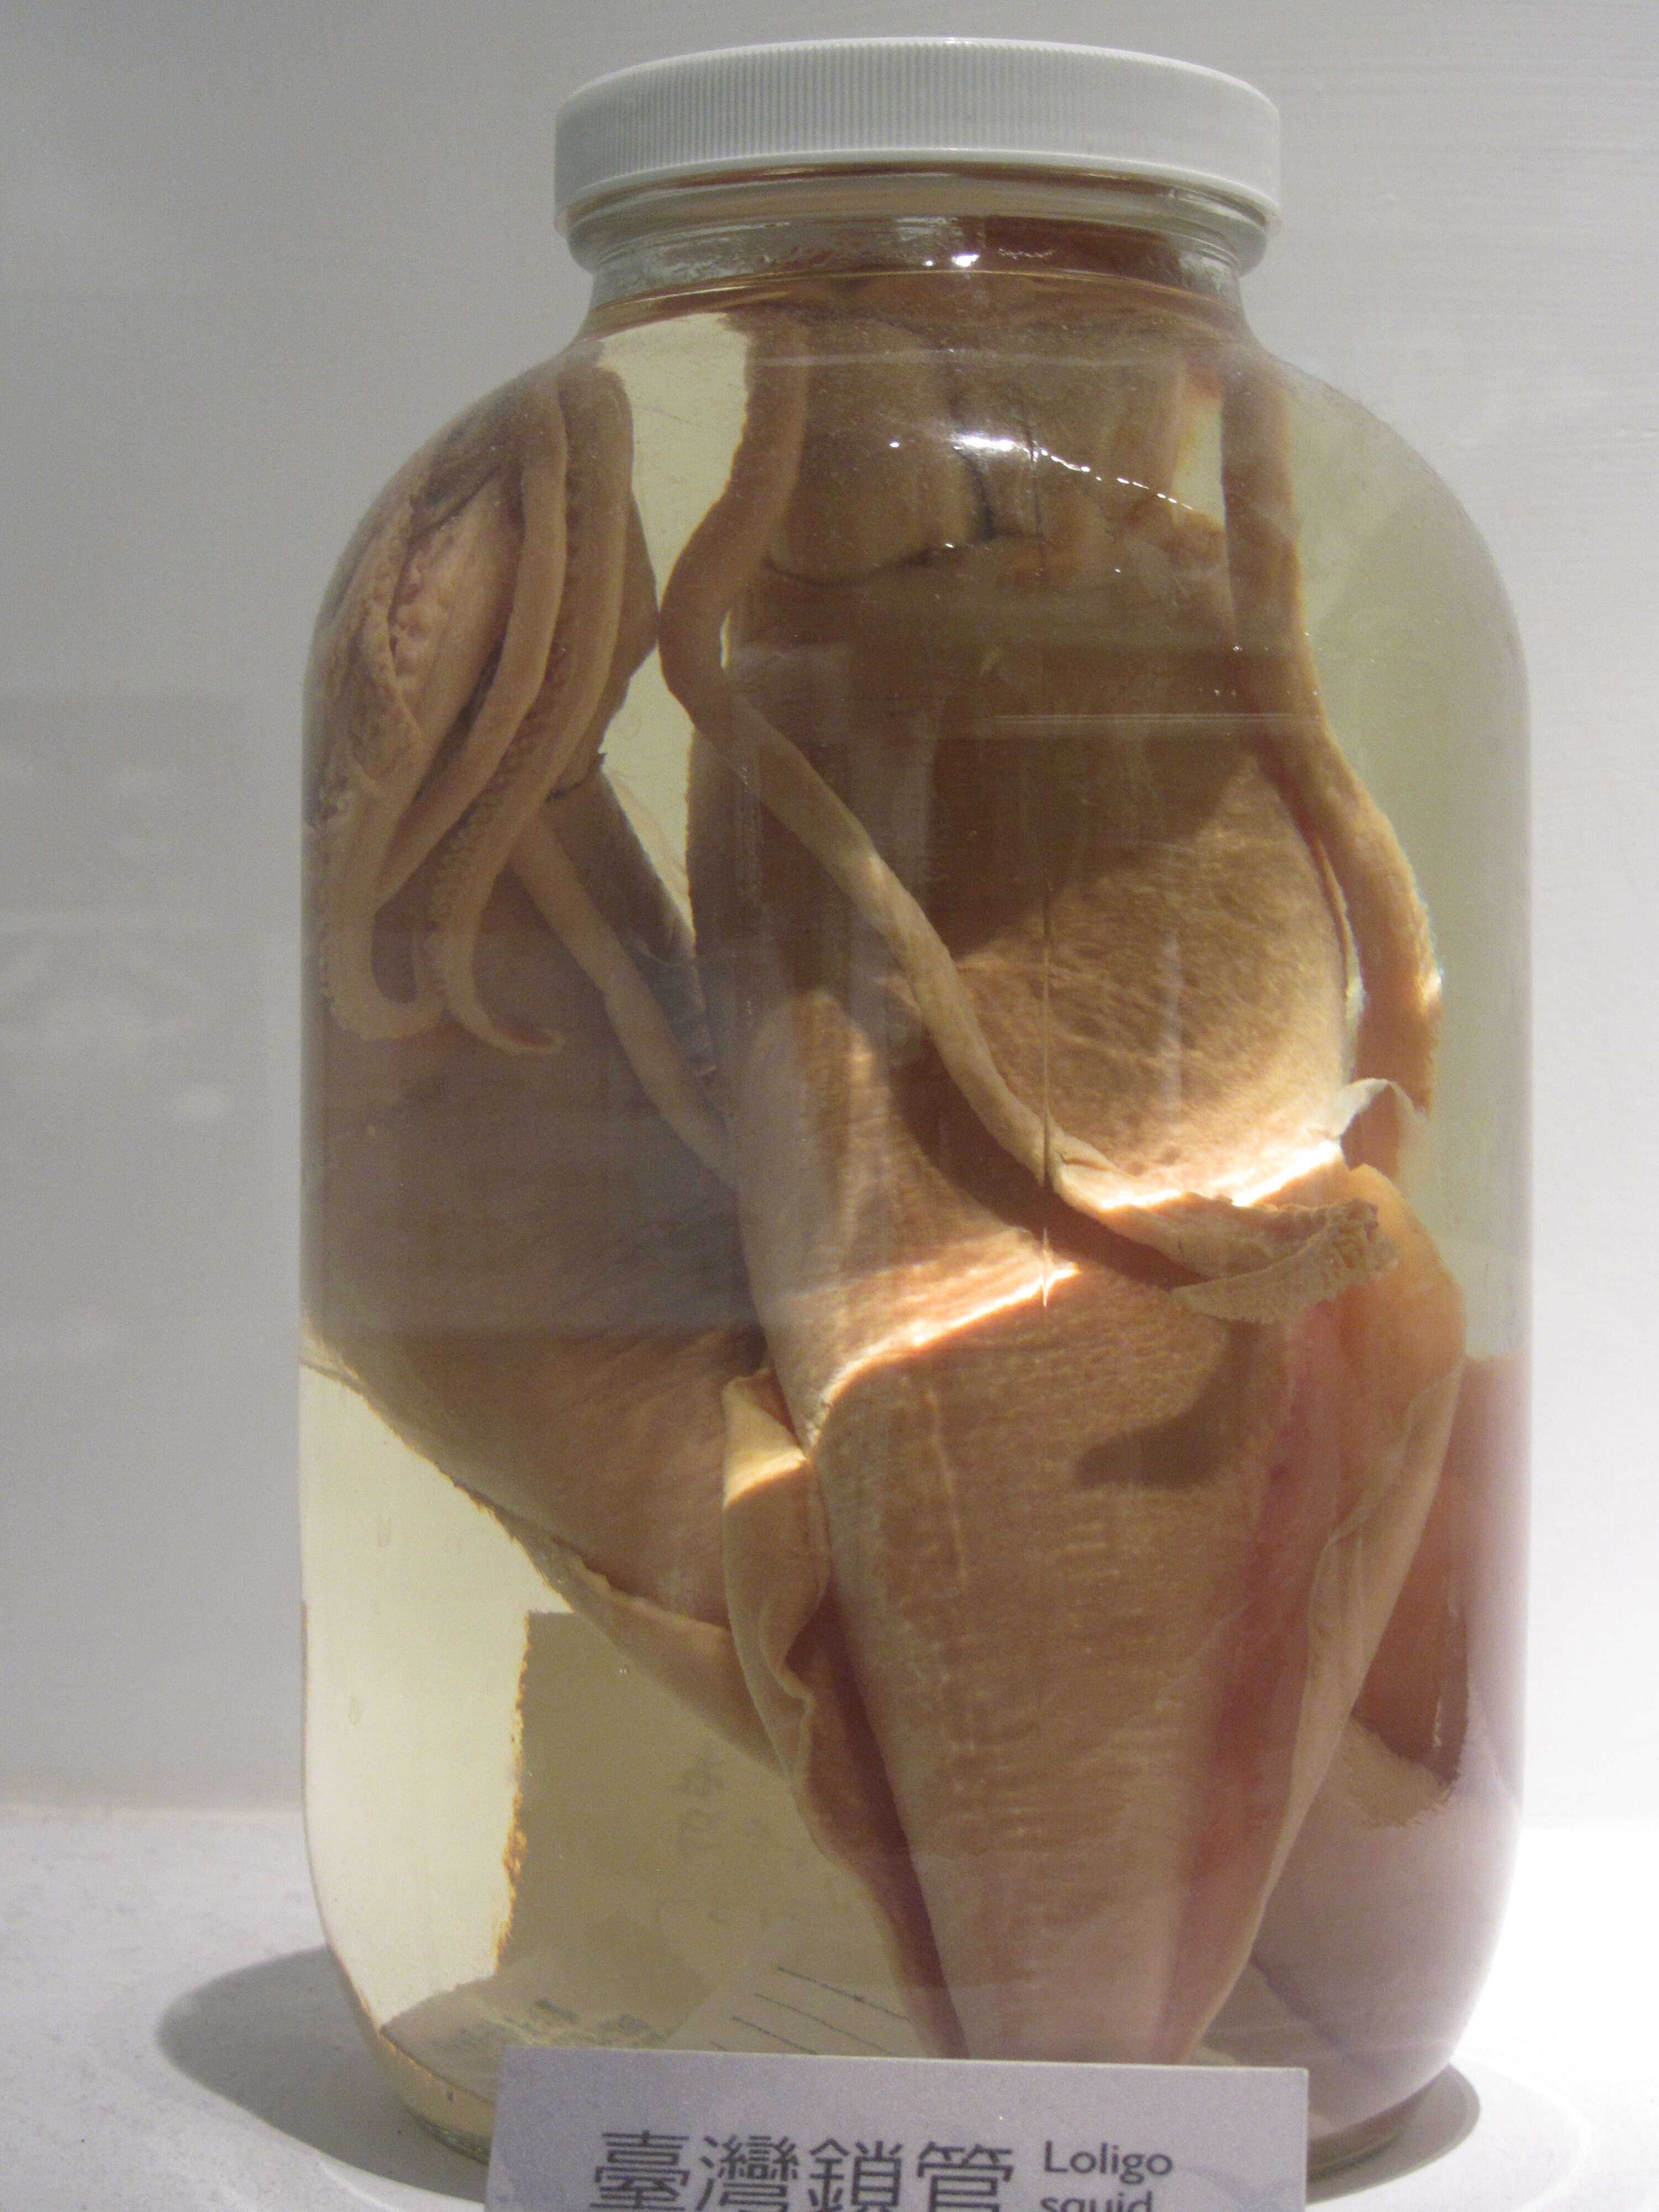 Image of mitre squid